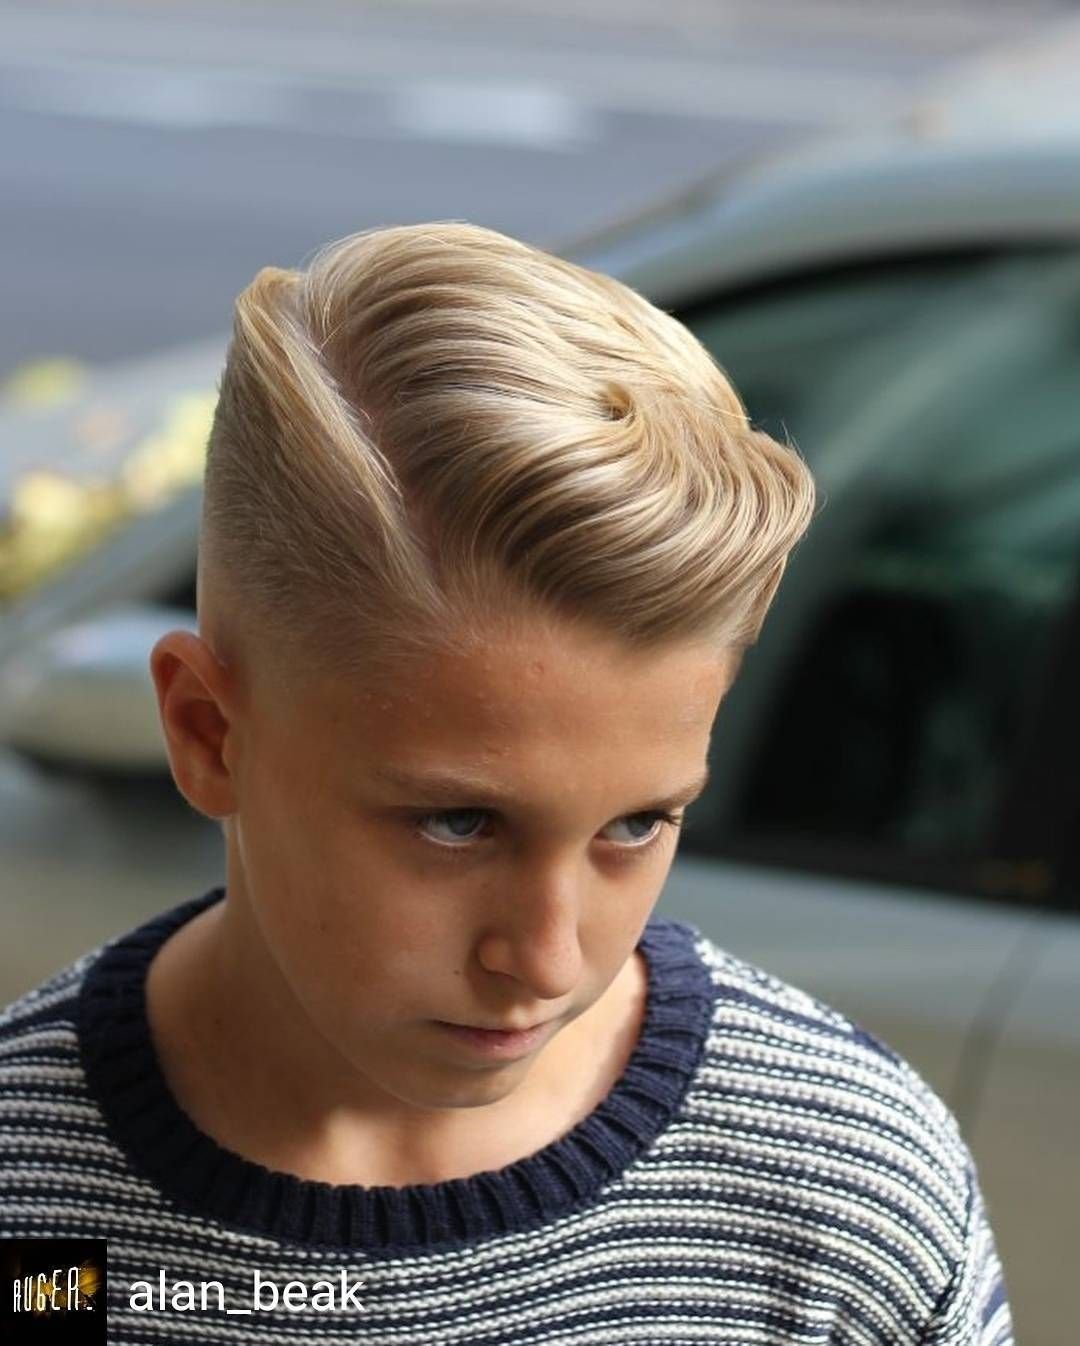 Мальчик волосы 11 лет. Причёски для мальчиков. Стрижки для мальчиков. Прически стрижки для мальчиков. Красивые причёски для мальчиков.